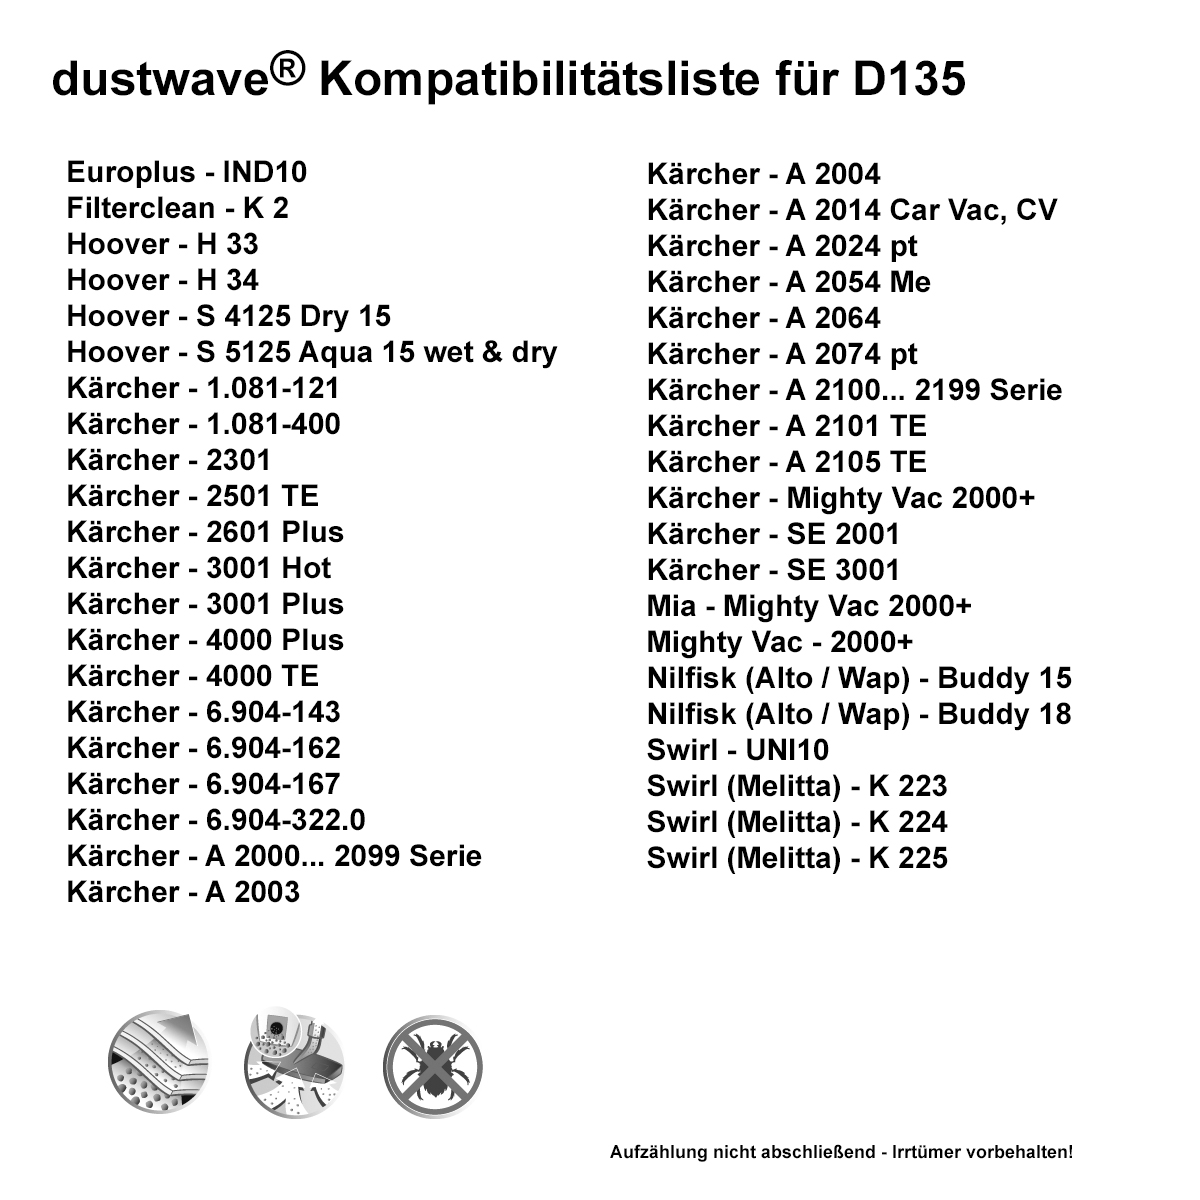 Dustwave® 10 Staubsaugerbeutel für Hoover PP CB200 001 - hocheffizient, mehrlagiges Mikrovlies mit Hygieneverschluss - Made in Germany